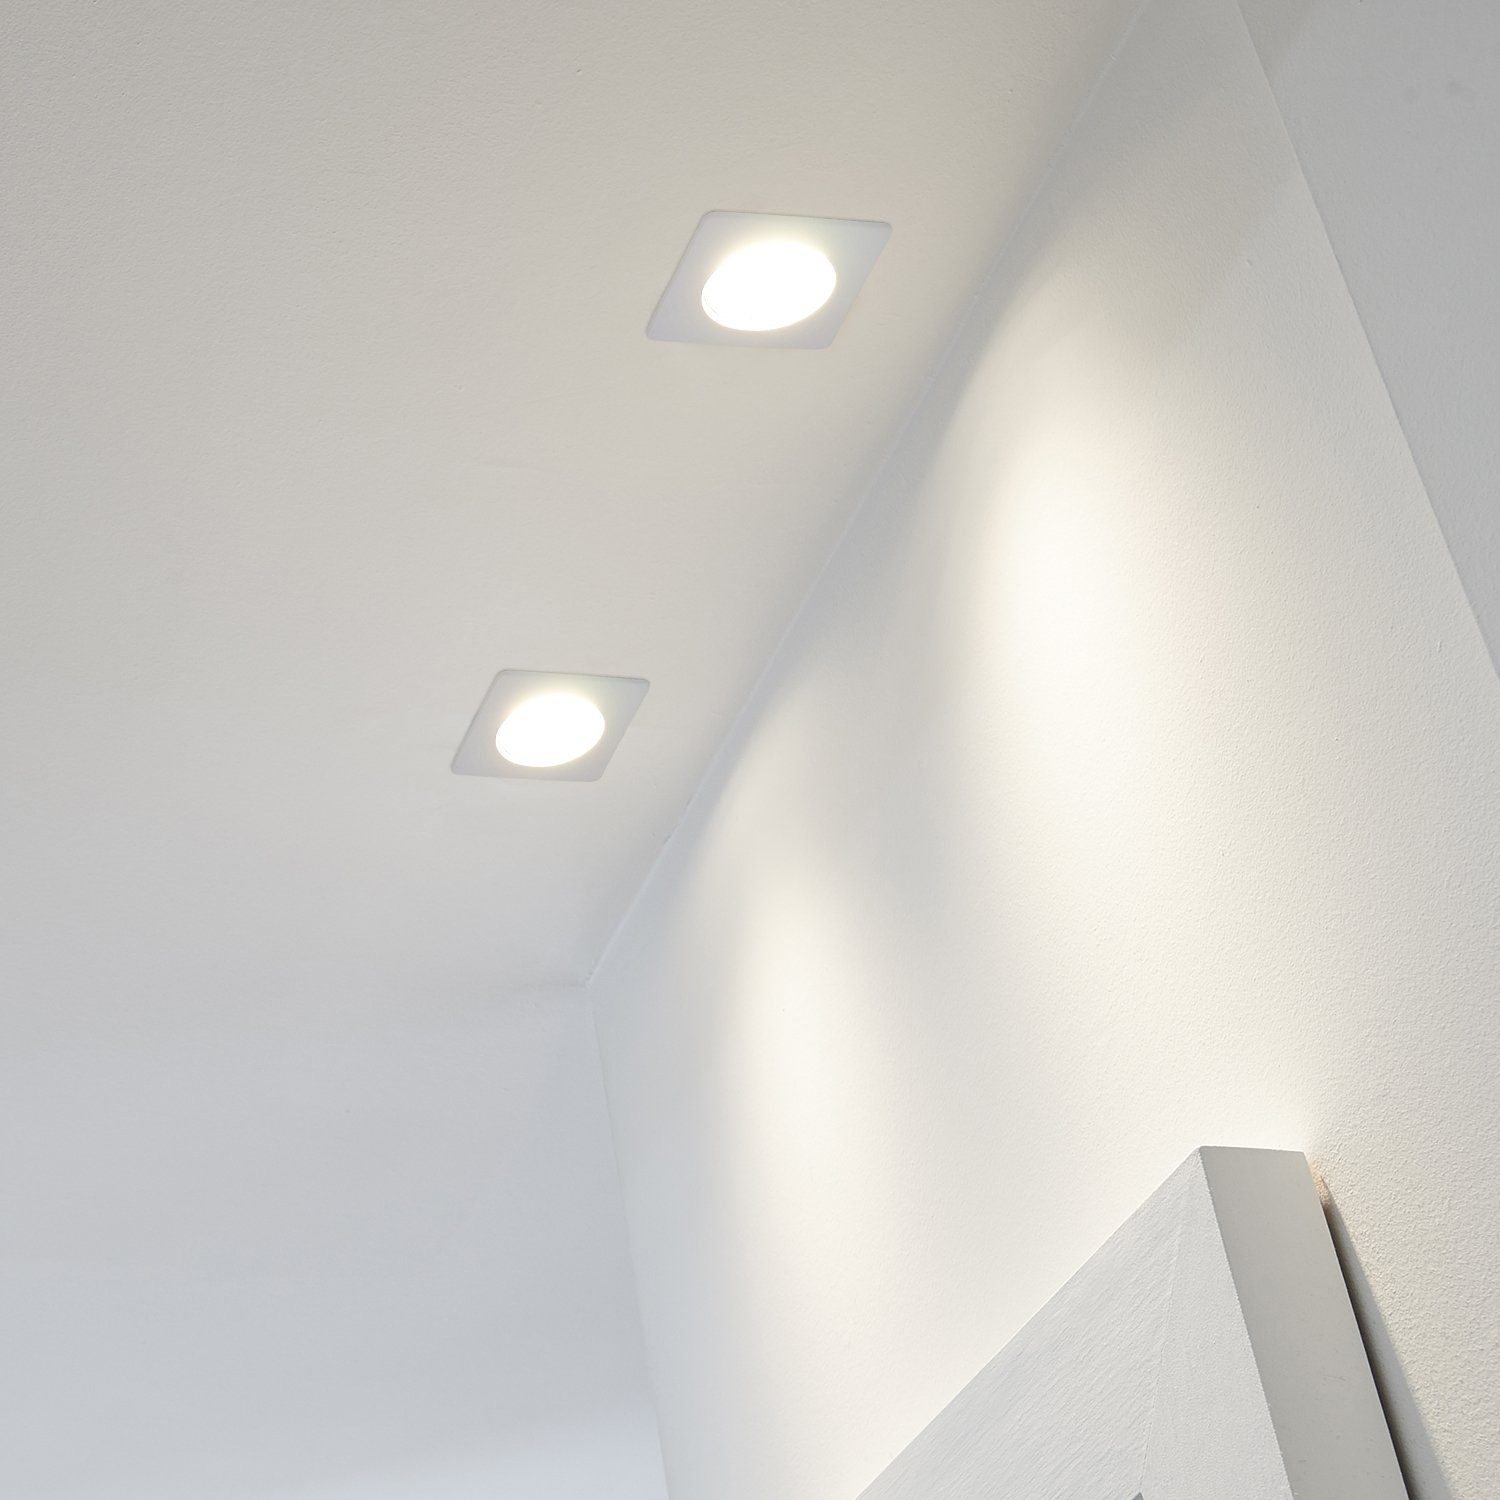 LEDANDO LED Einbaustrahler 10er LED Einbaustrahler Set Weiß mit LED GU5.3 / MR16 Markenstrahler v